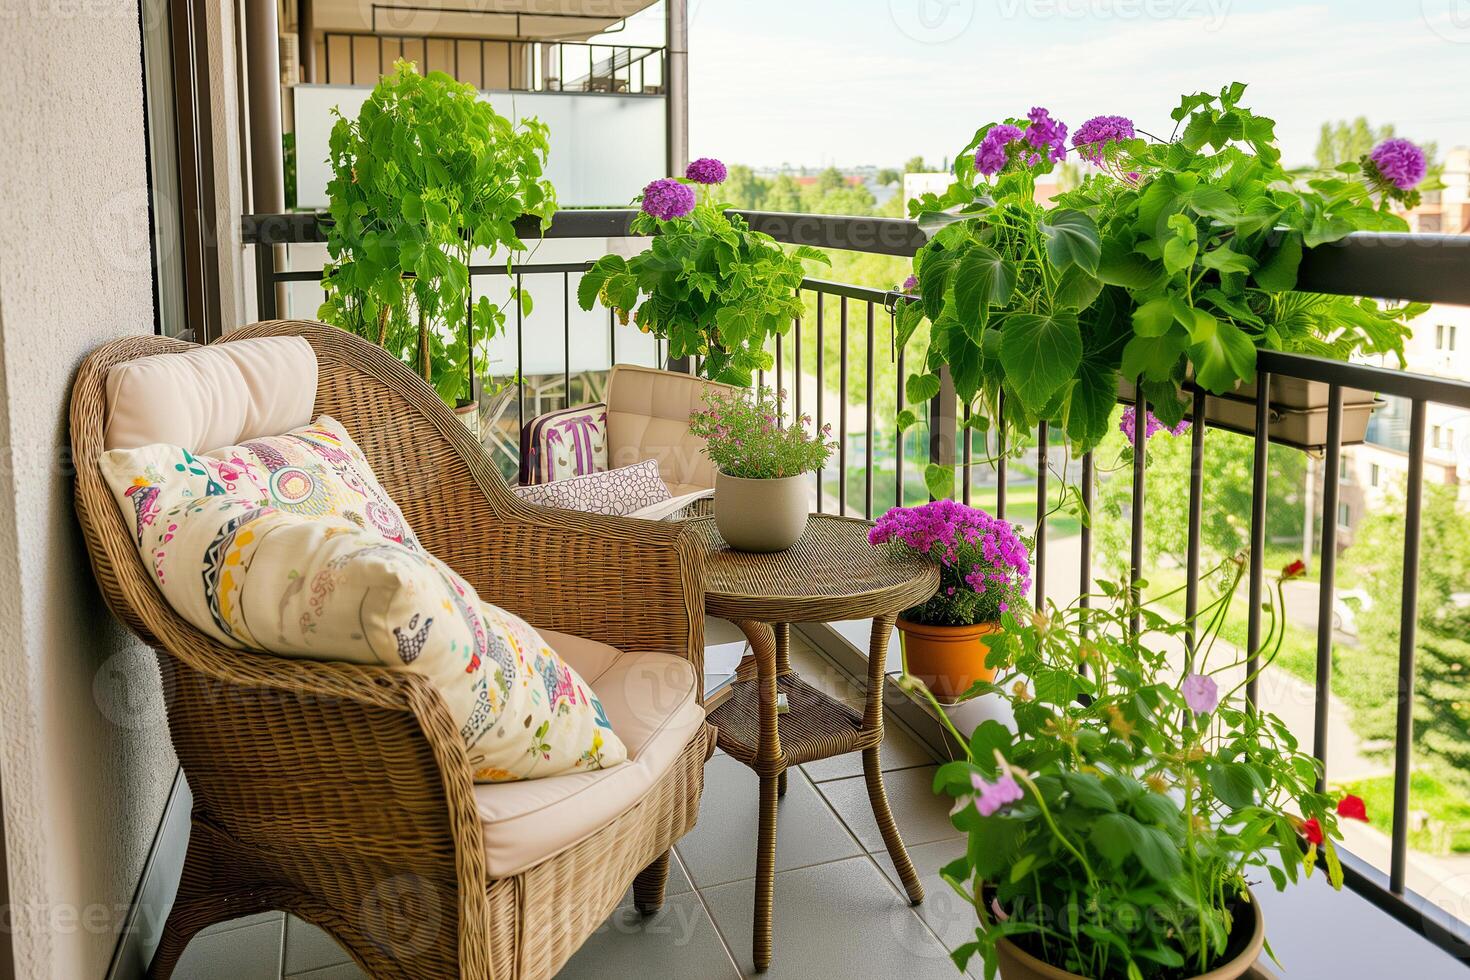 ai gegenereerd knus patio balkon, zitplaatsen Oppervlakte met rieten meubilair en veel planten foto